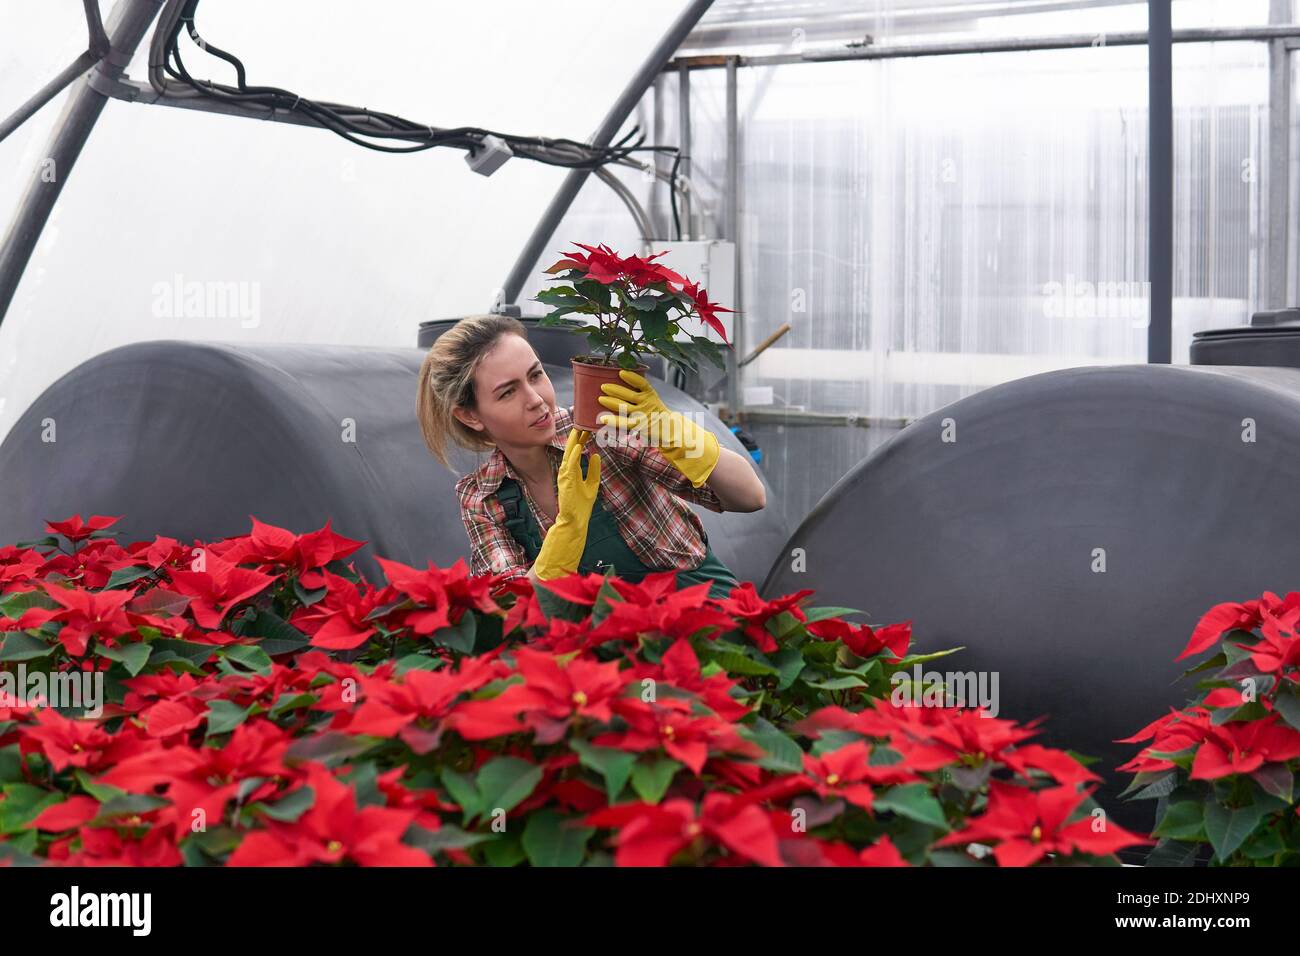 Gärtnerin in einem Gewächshaus mit roten Weihnachtssternen untersucht sorgfältig einen der Blumentöpfe, hält ihn in den Händen Stockfoto